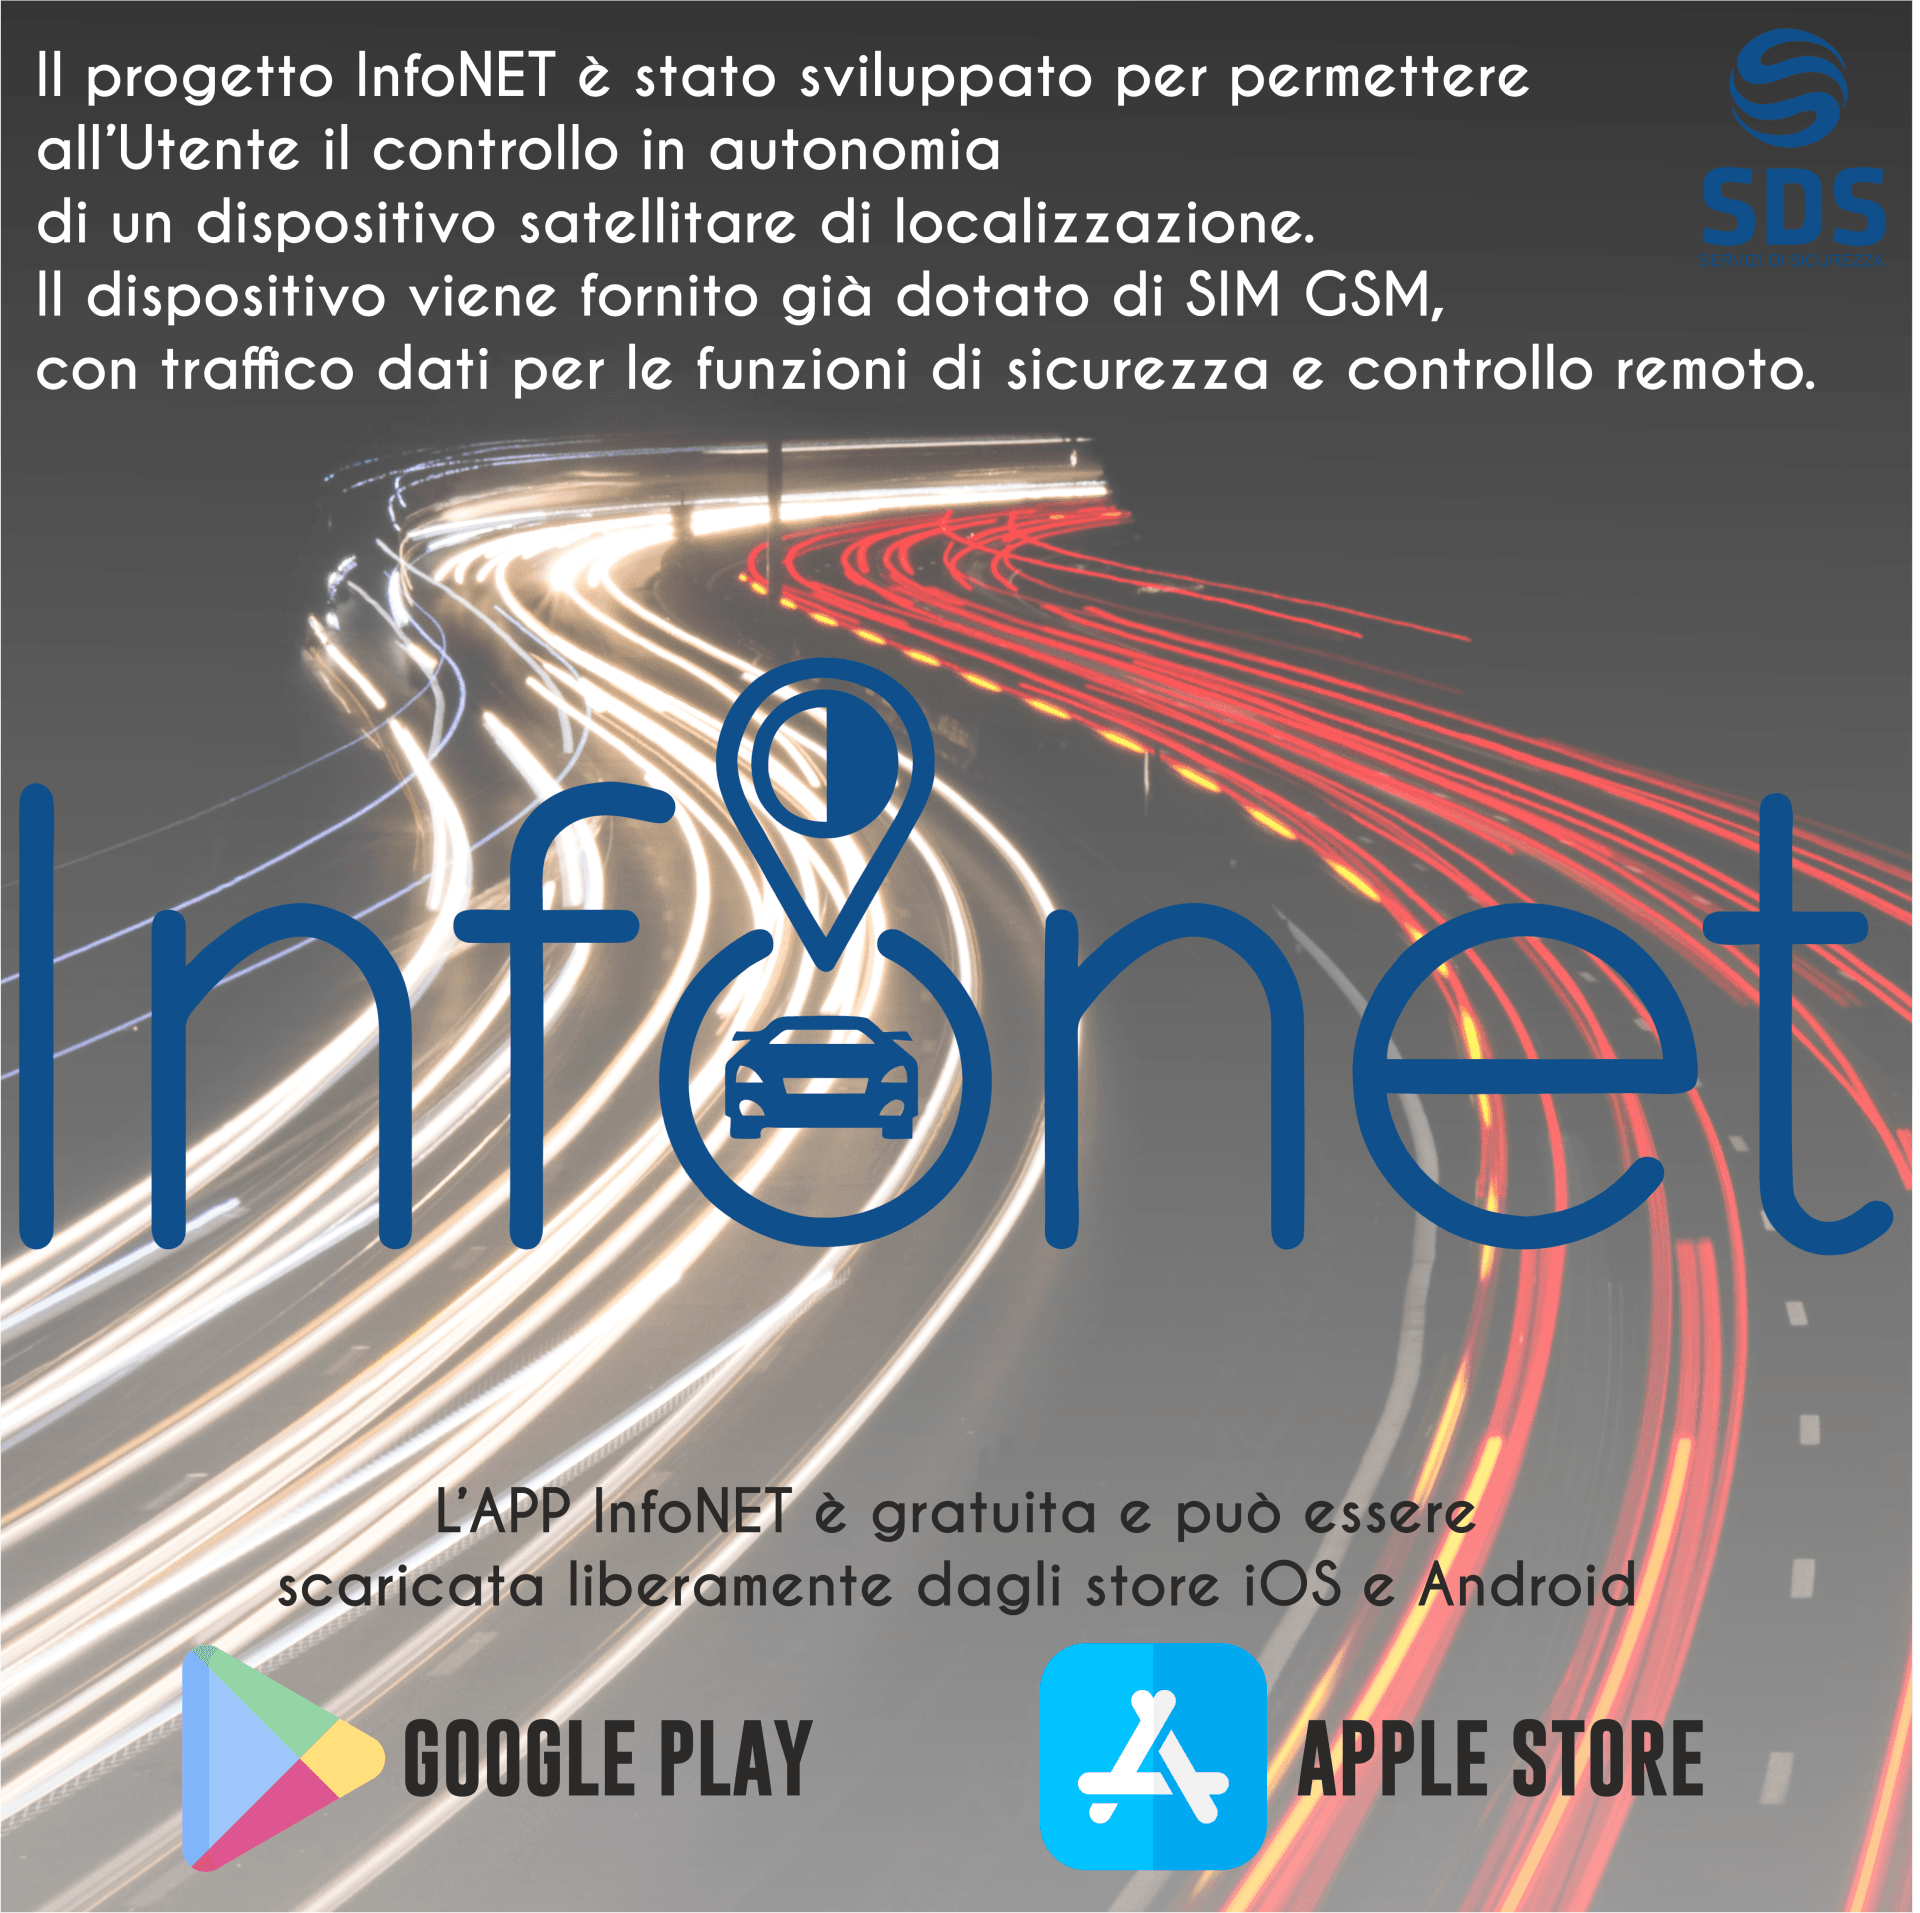 Post app infonet